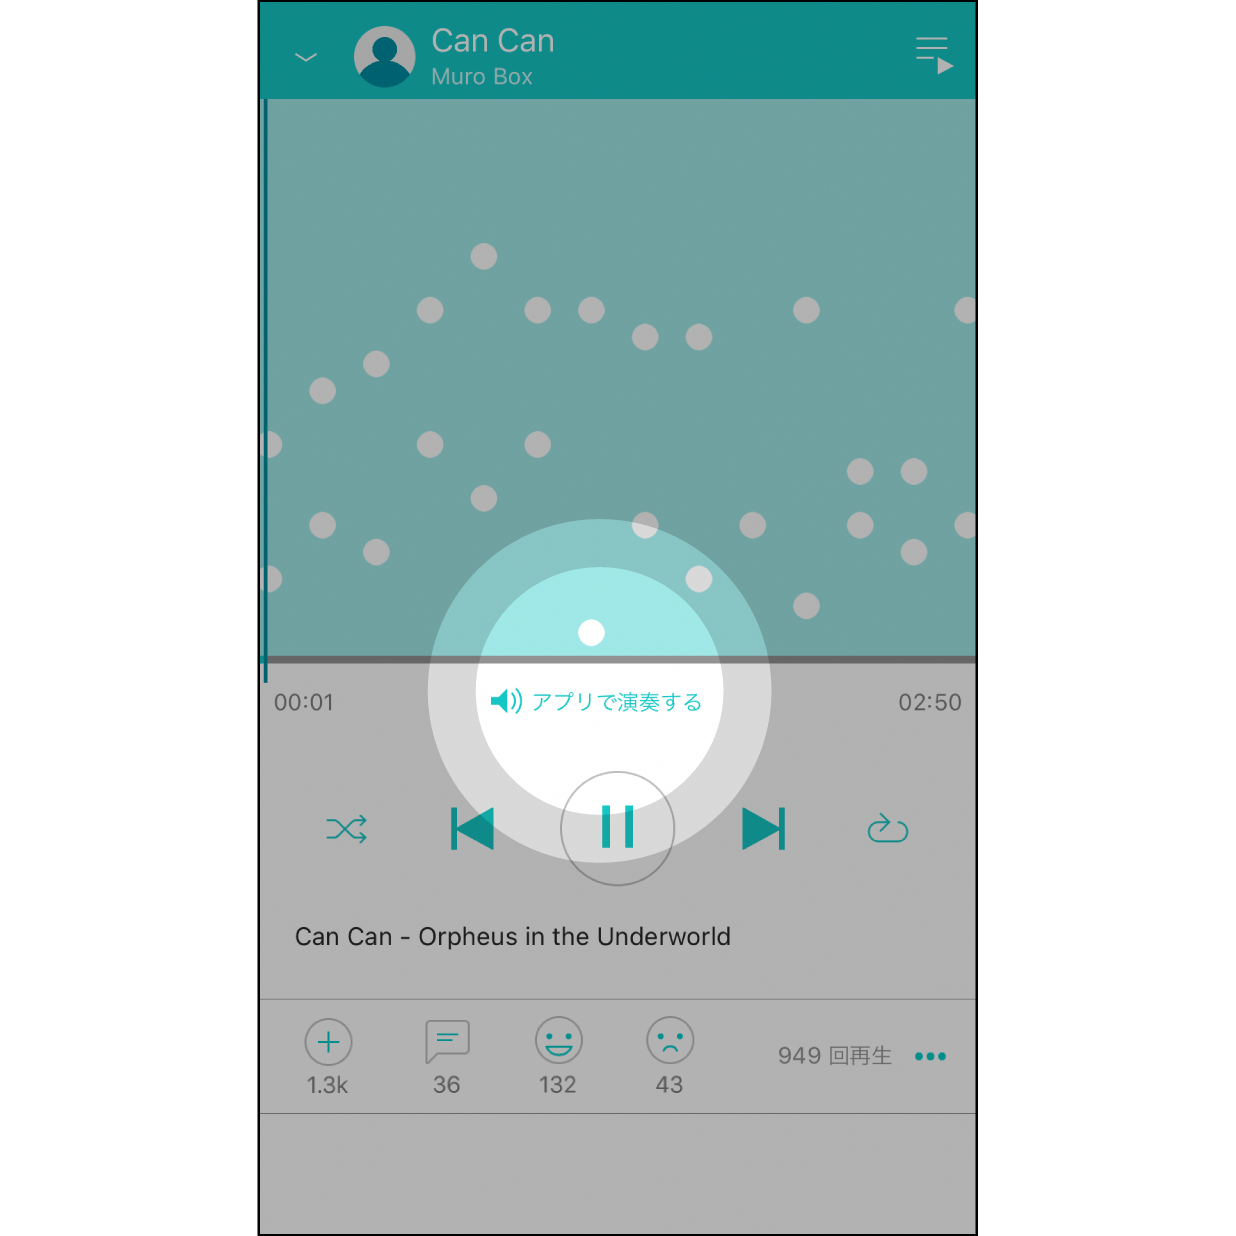 音楽を演奏する媒体アプリがMuro Boxに接続されている場合、「アプリ/Muro Boxで演奏する」ボタンでどちらで演奏するかお選びいただけます。